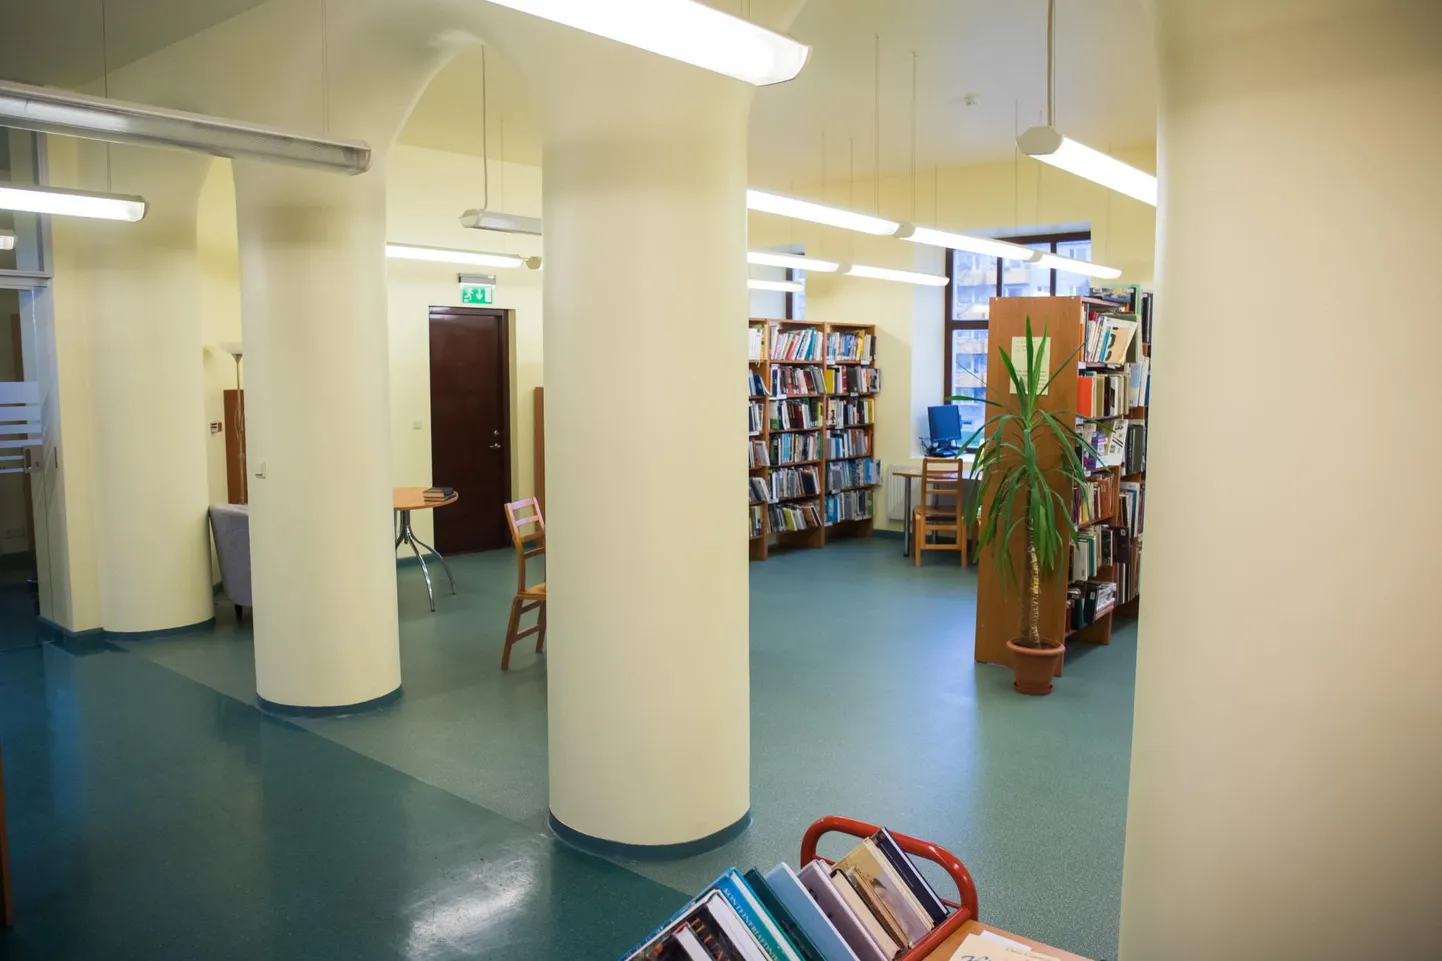 Lääne-Virumaa keskraamatukogus toimuvad terviseteemalised loengud.